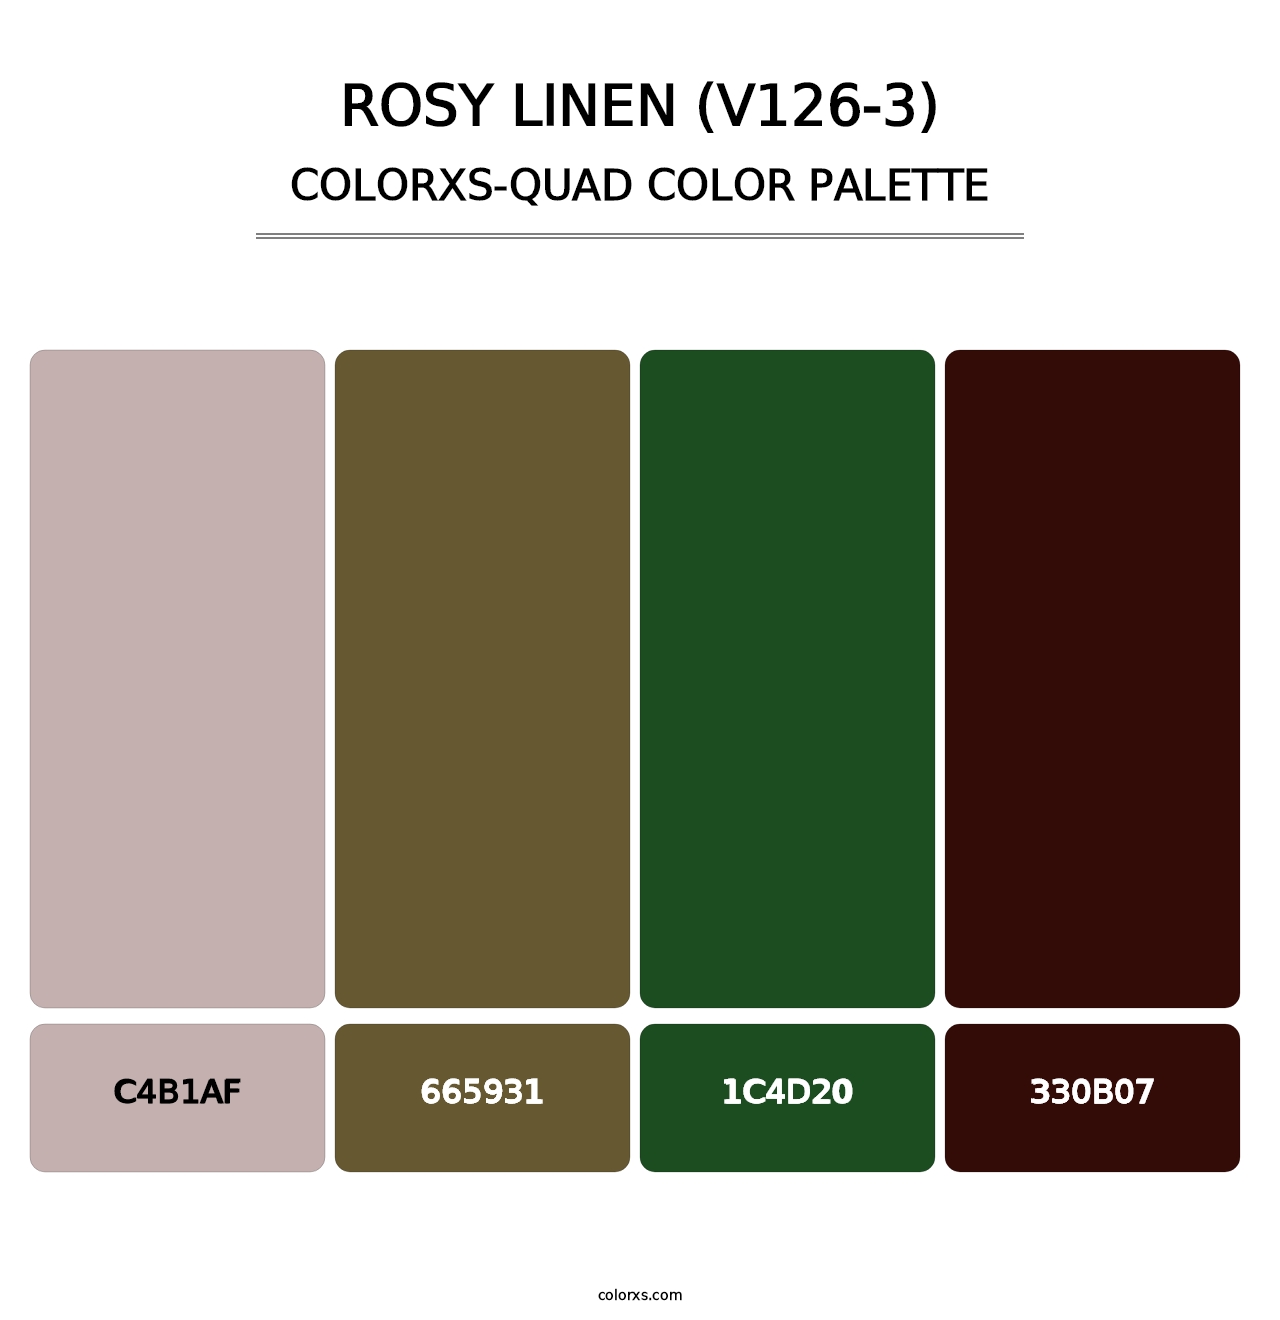 Rosy Linen (V126-3) - Colorxs Quad Palette